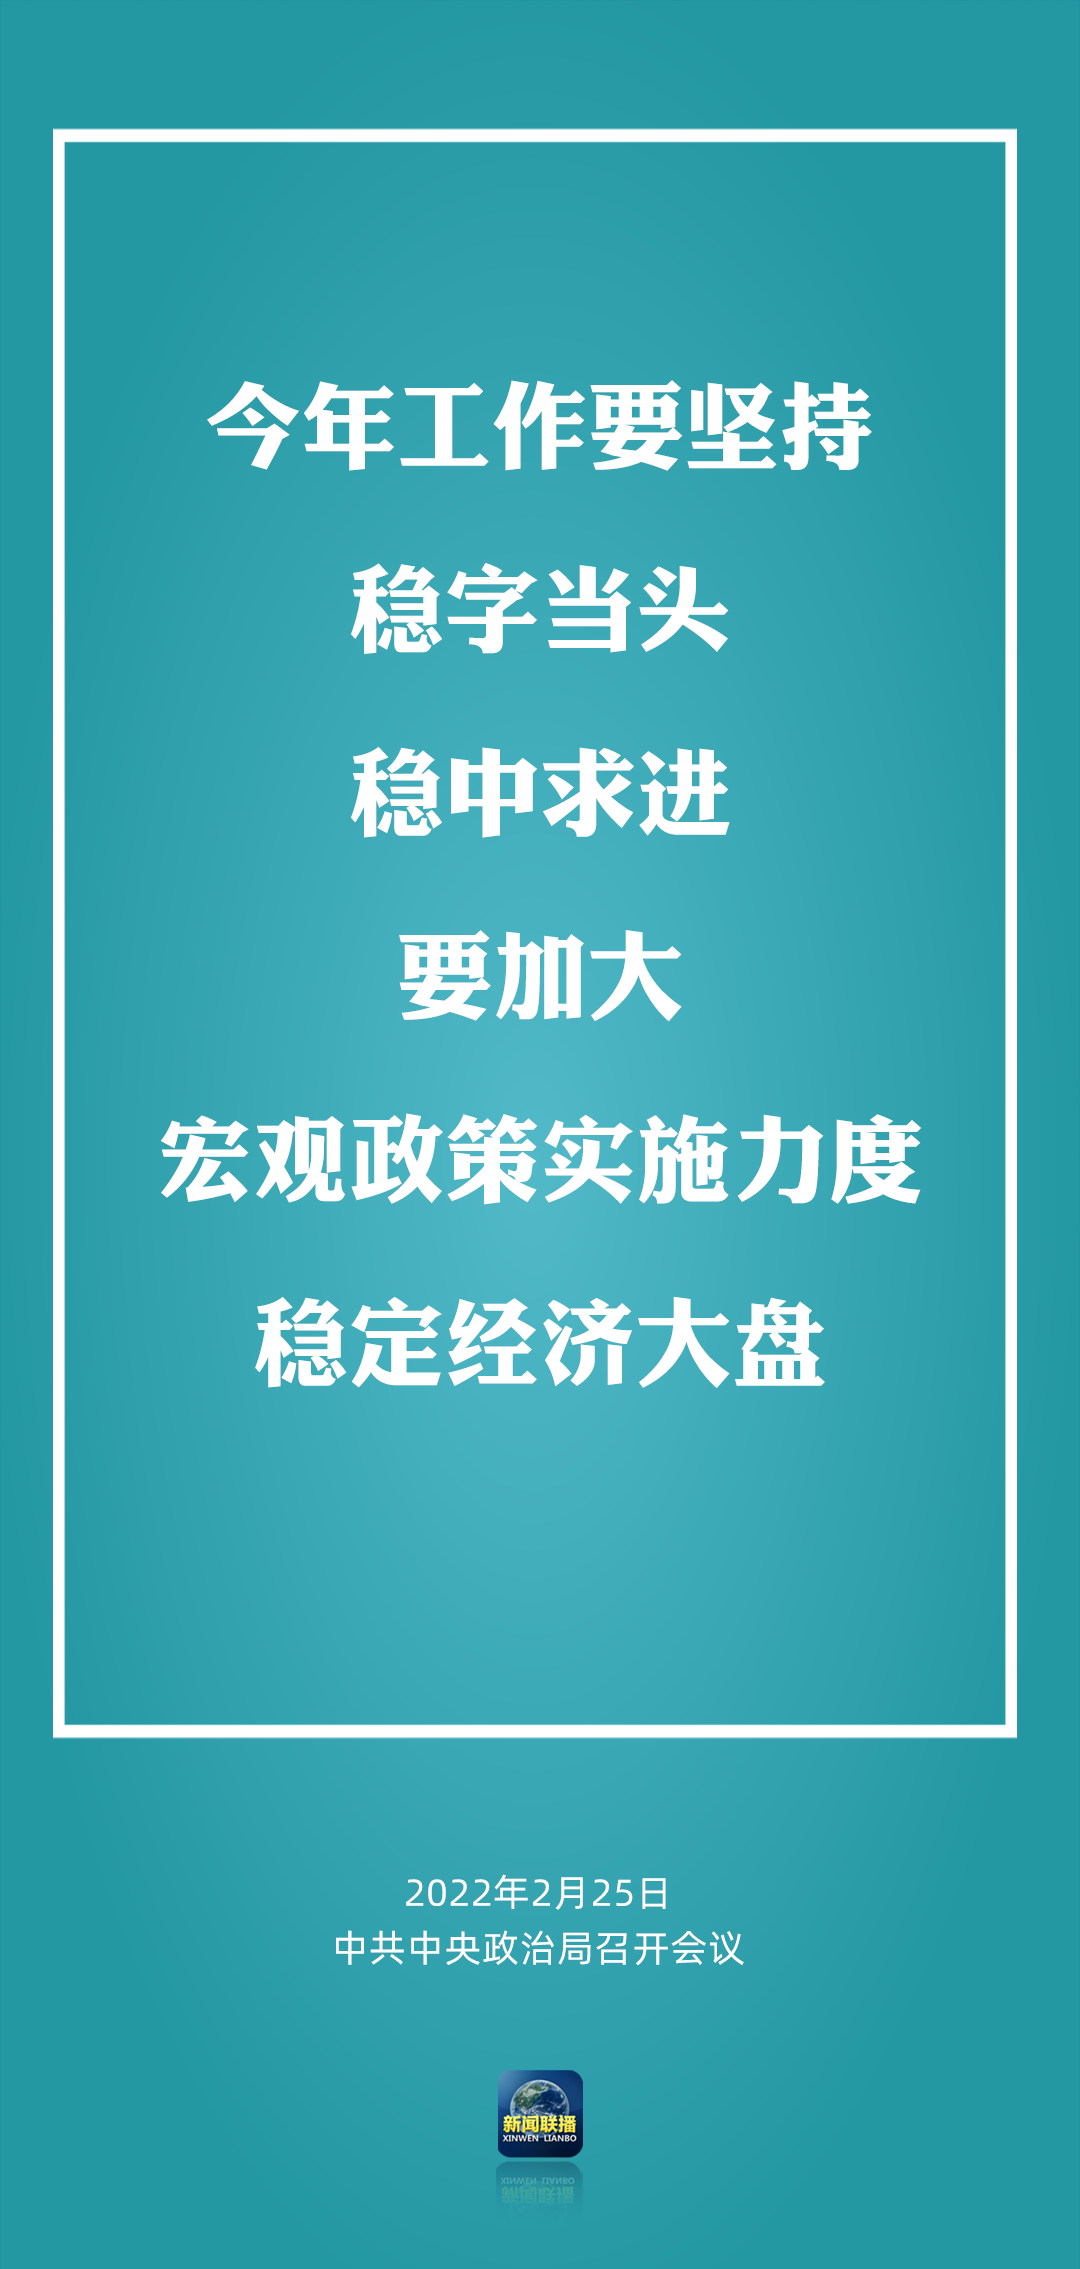 中共中央政治局召开会议 讨论和审议三份重要报告